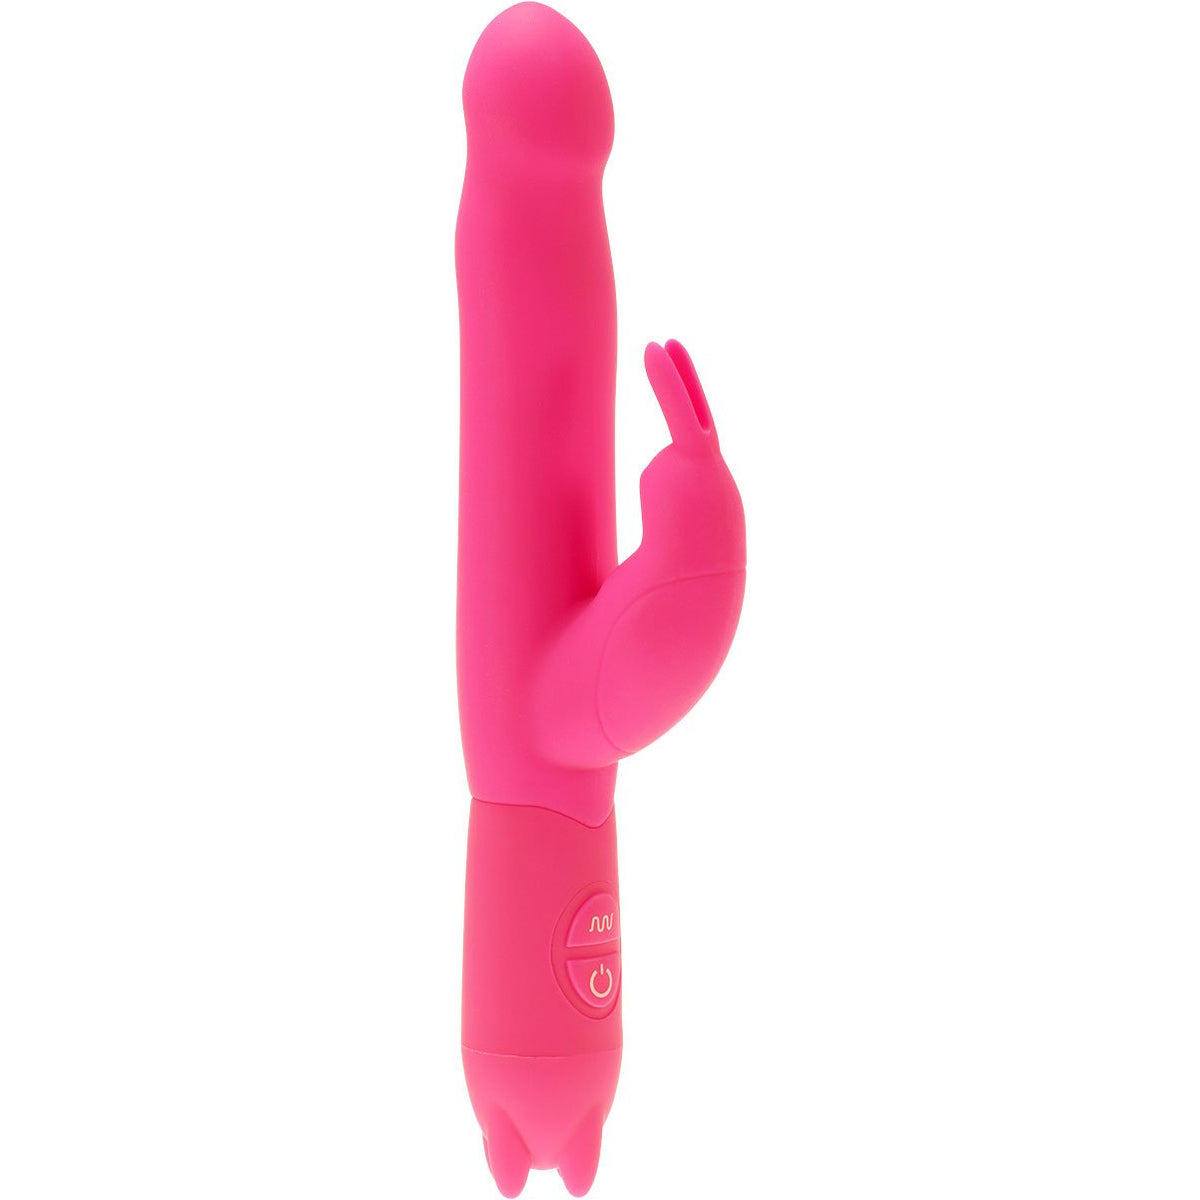 Minx Ultra Joy Rabbit Vibrator - Pink